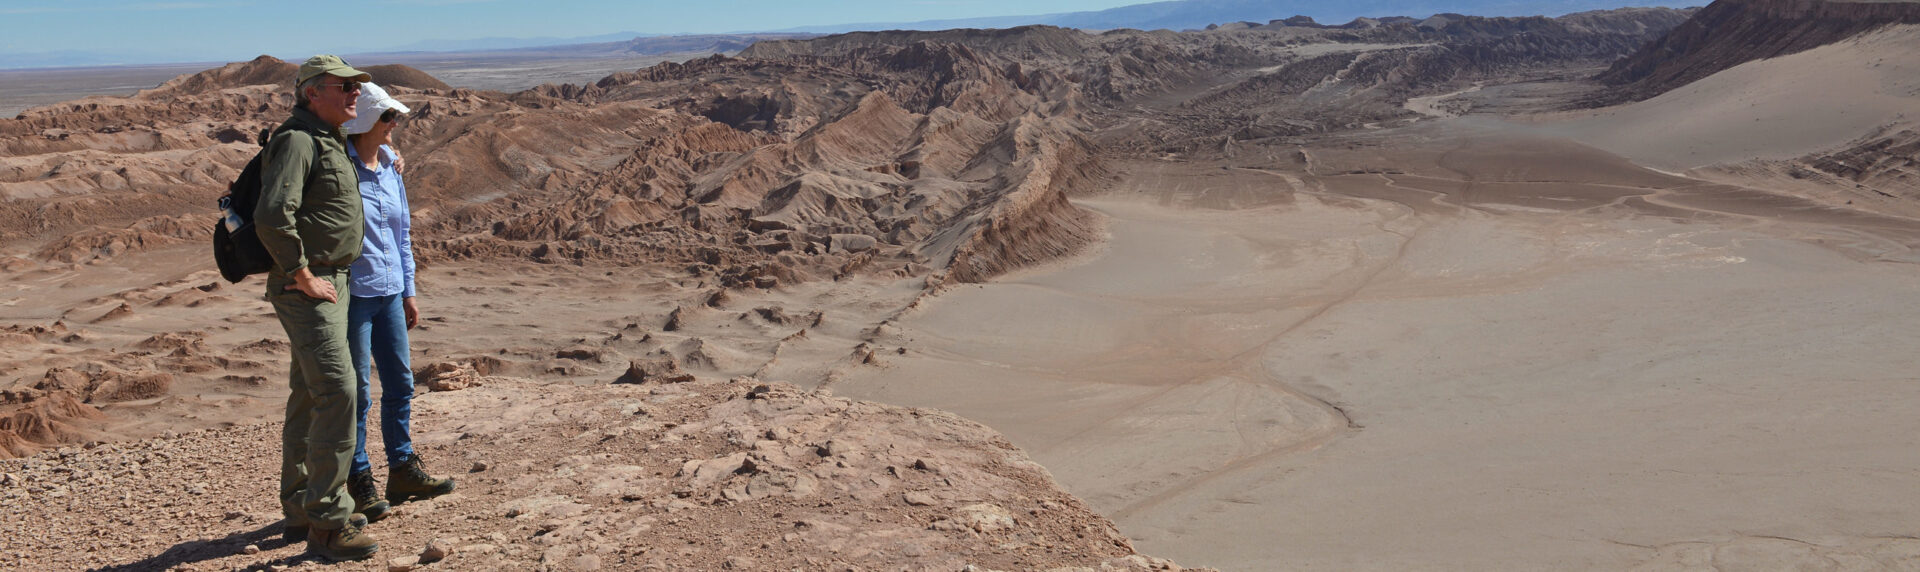 Pano Demeyer Helen Atacamawoestijn Chili Reizen6